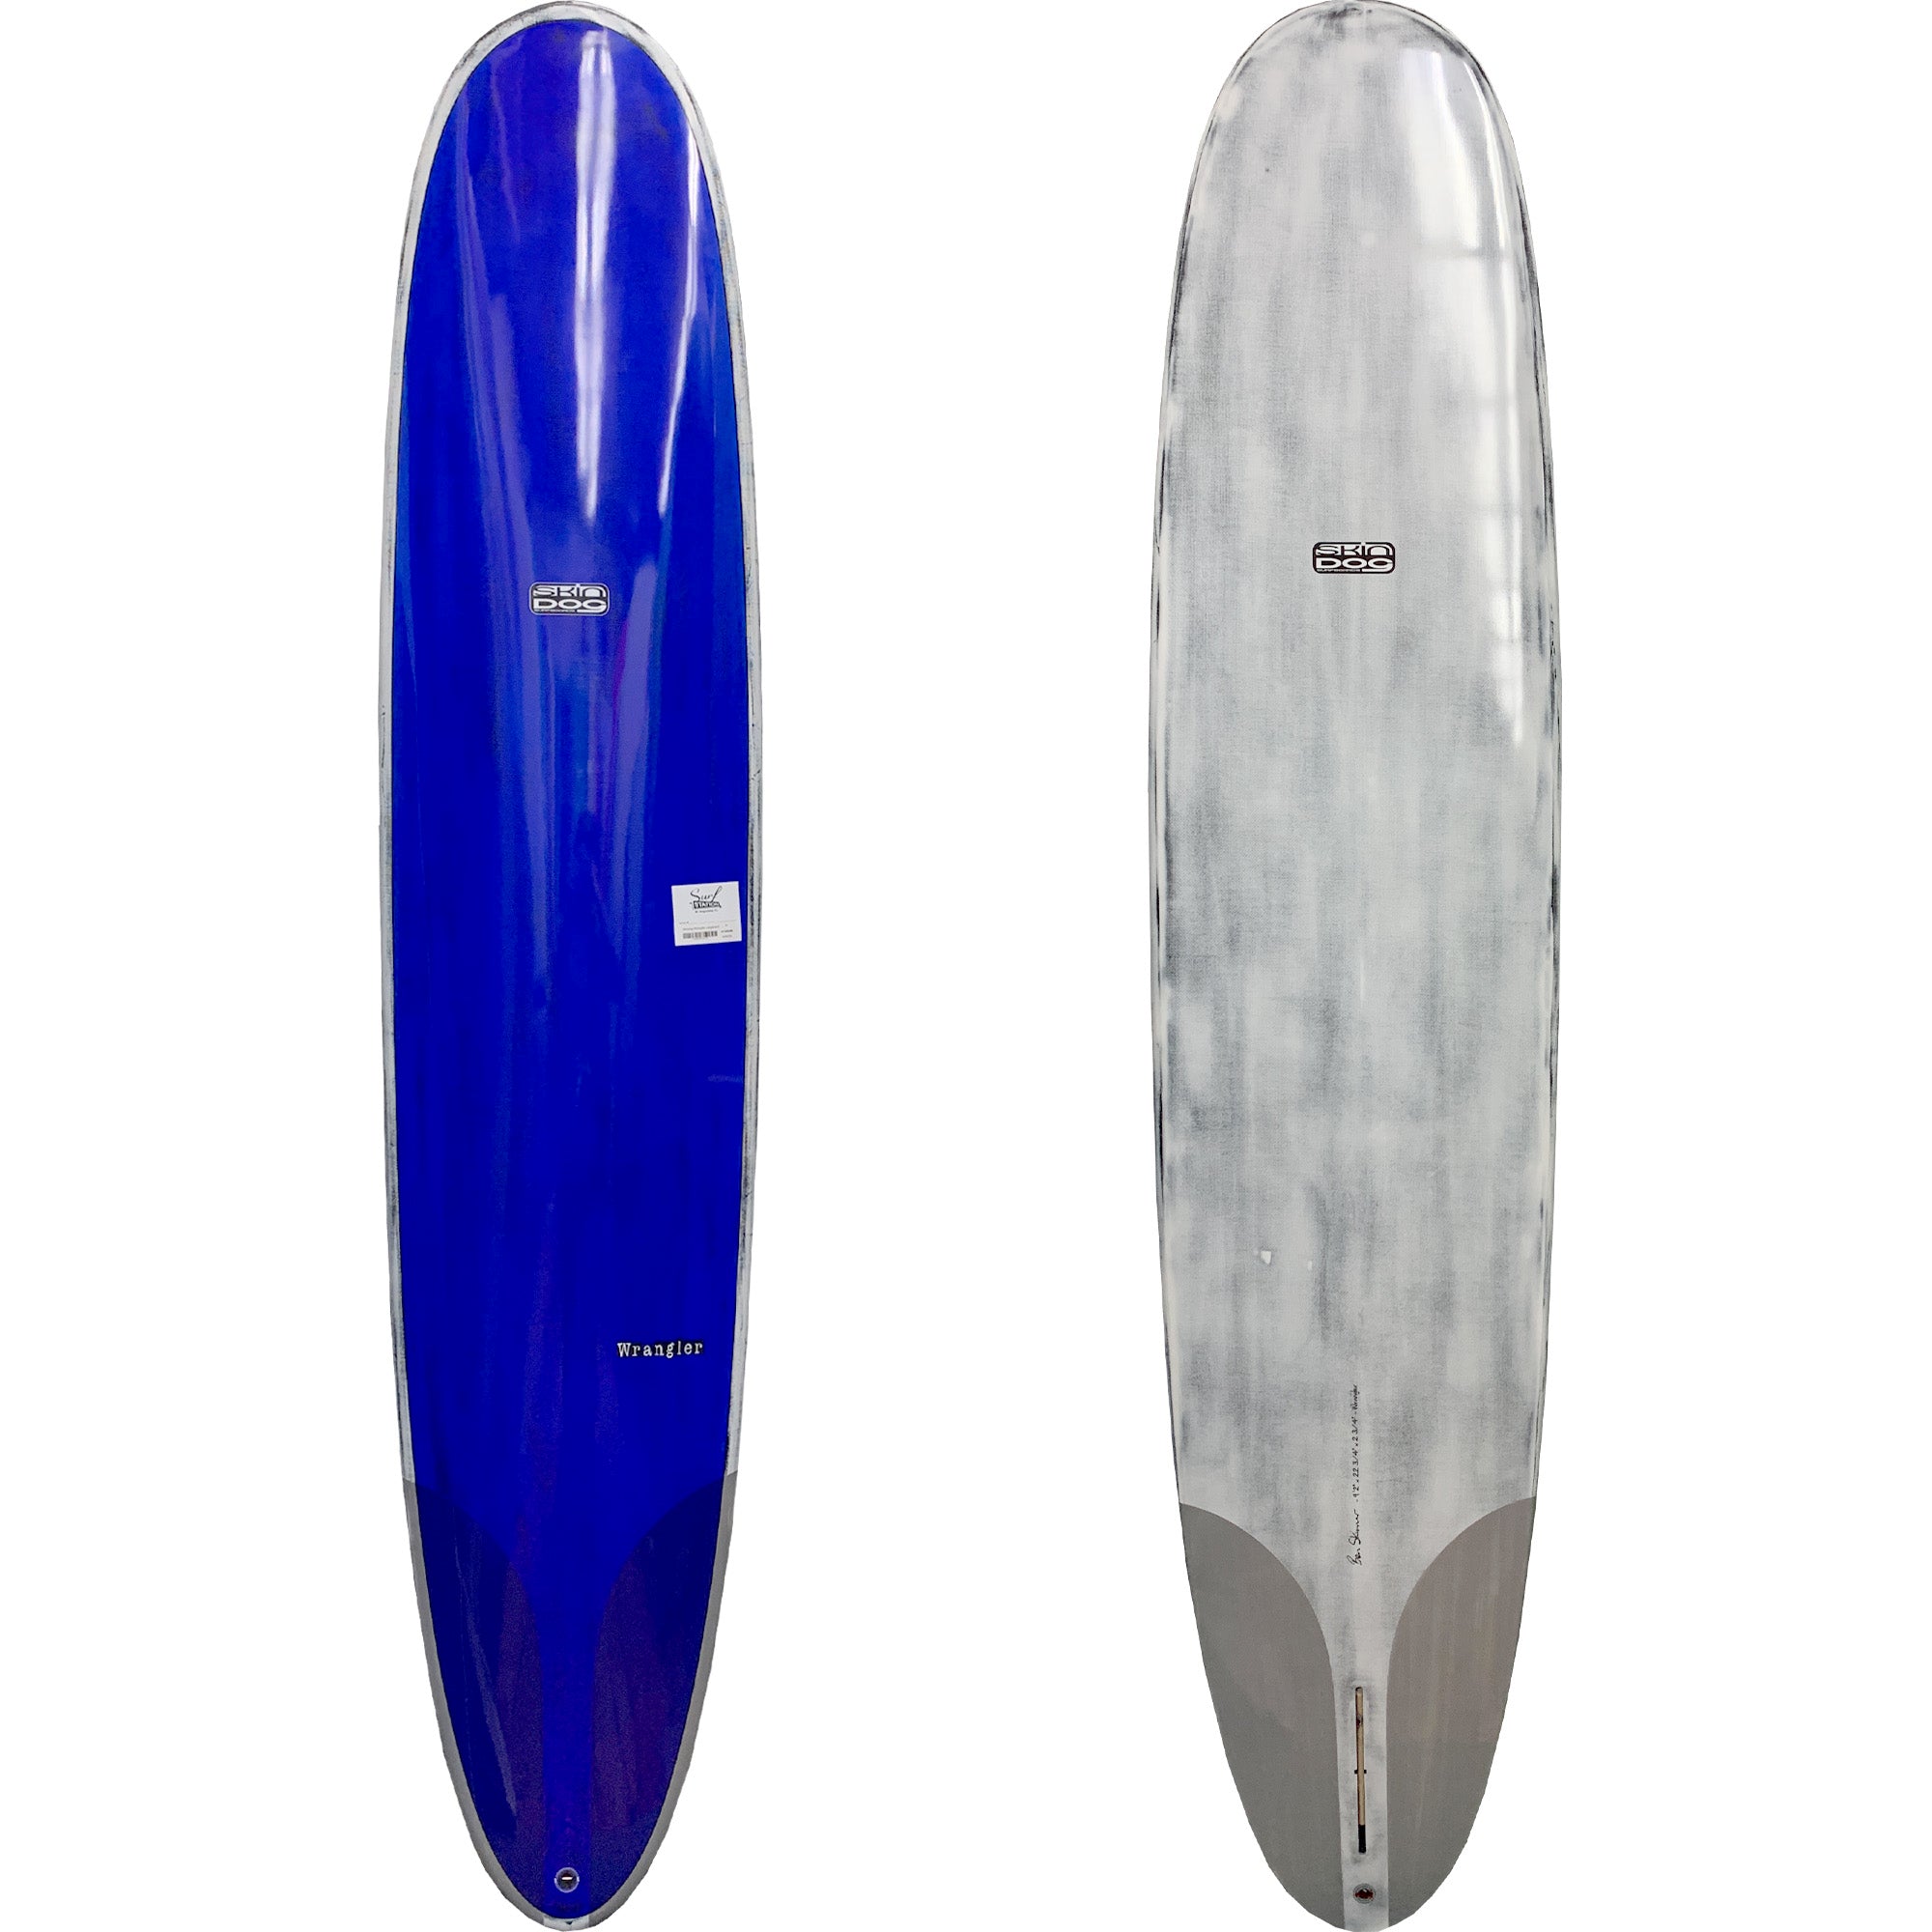 Skindog Wrangler Thunderbolt Longboard Surfboard